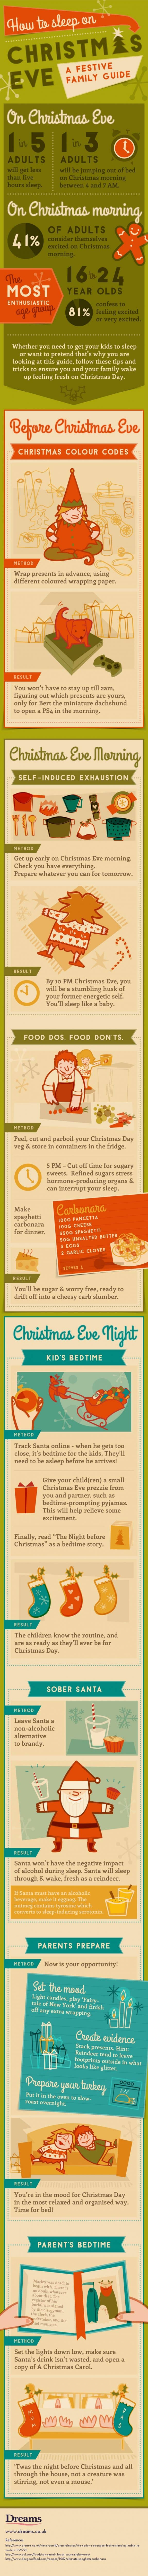 How to sleep on christmas eve infographic